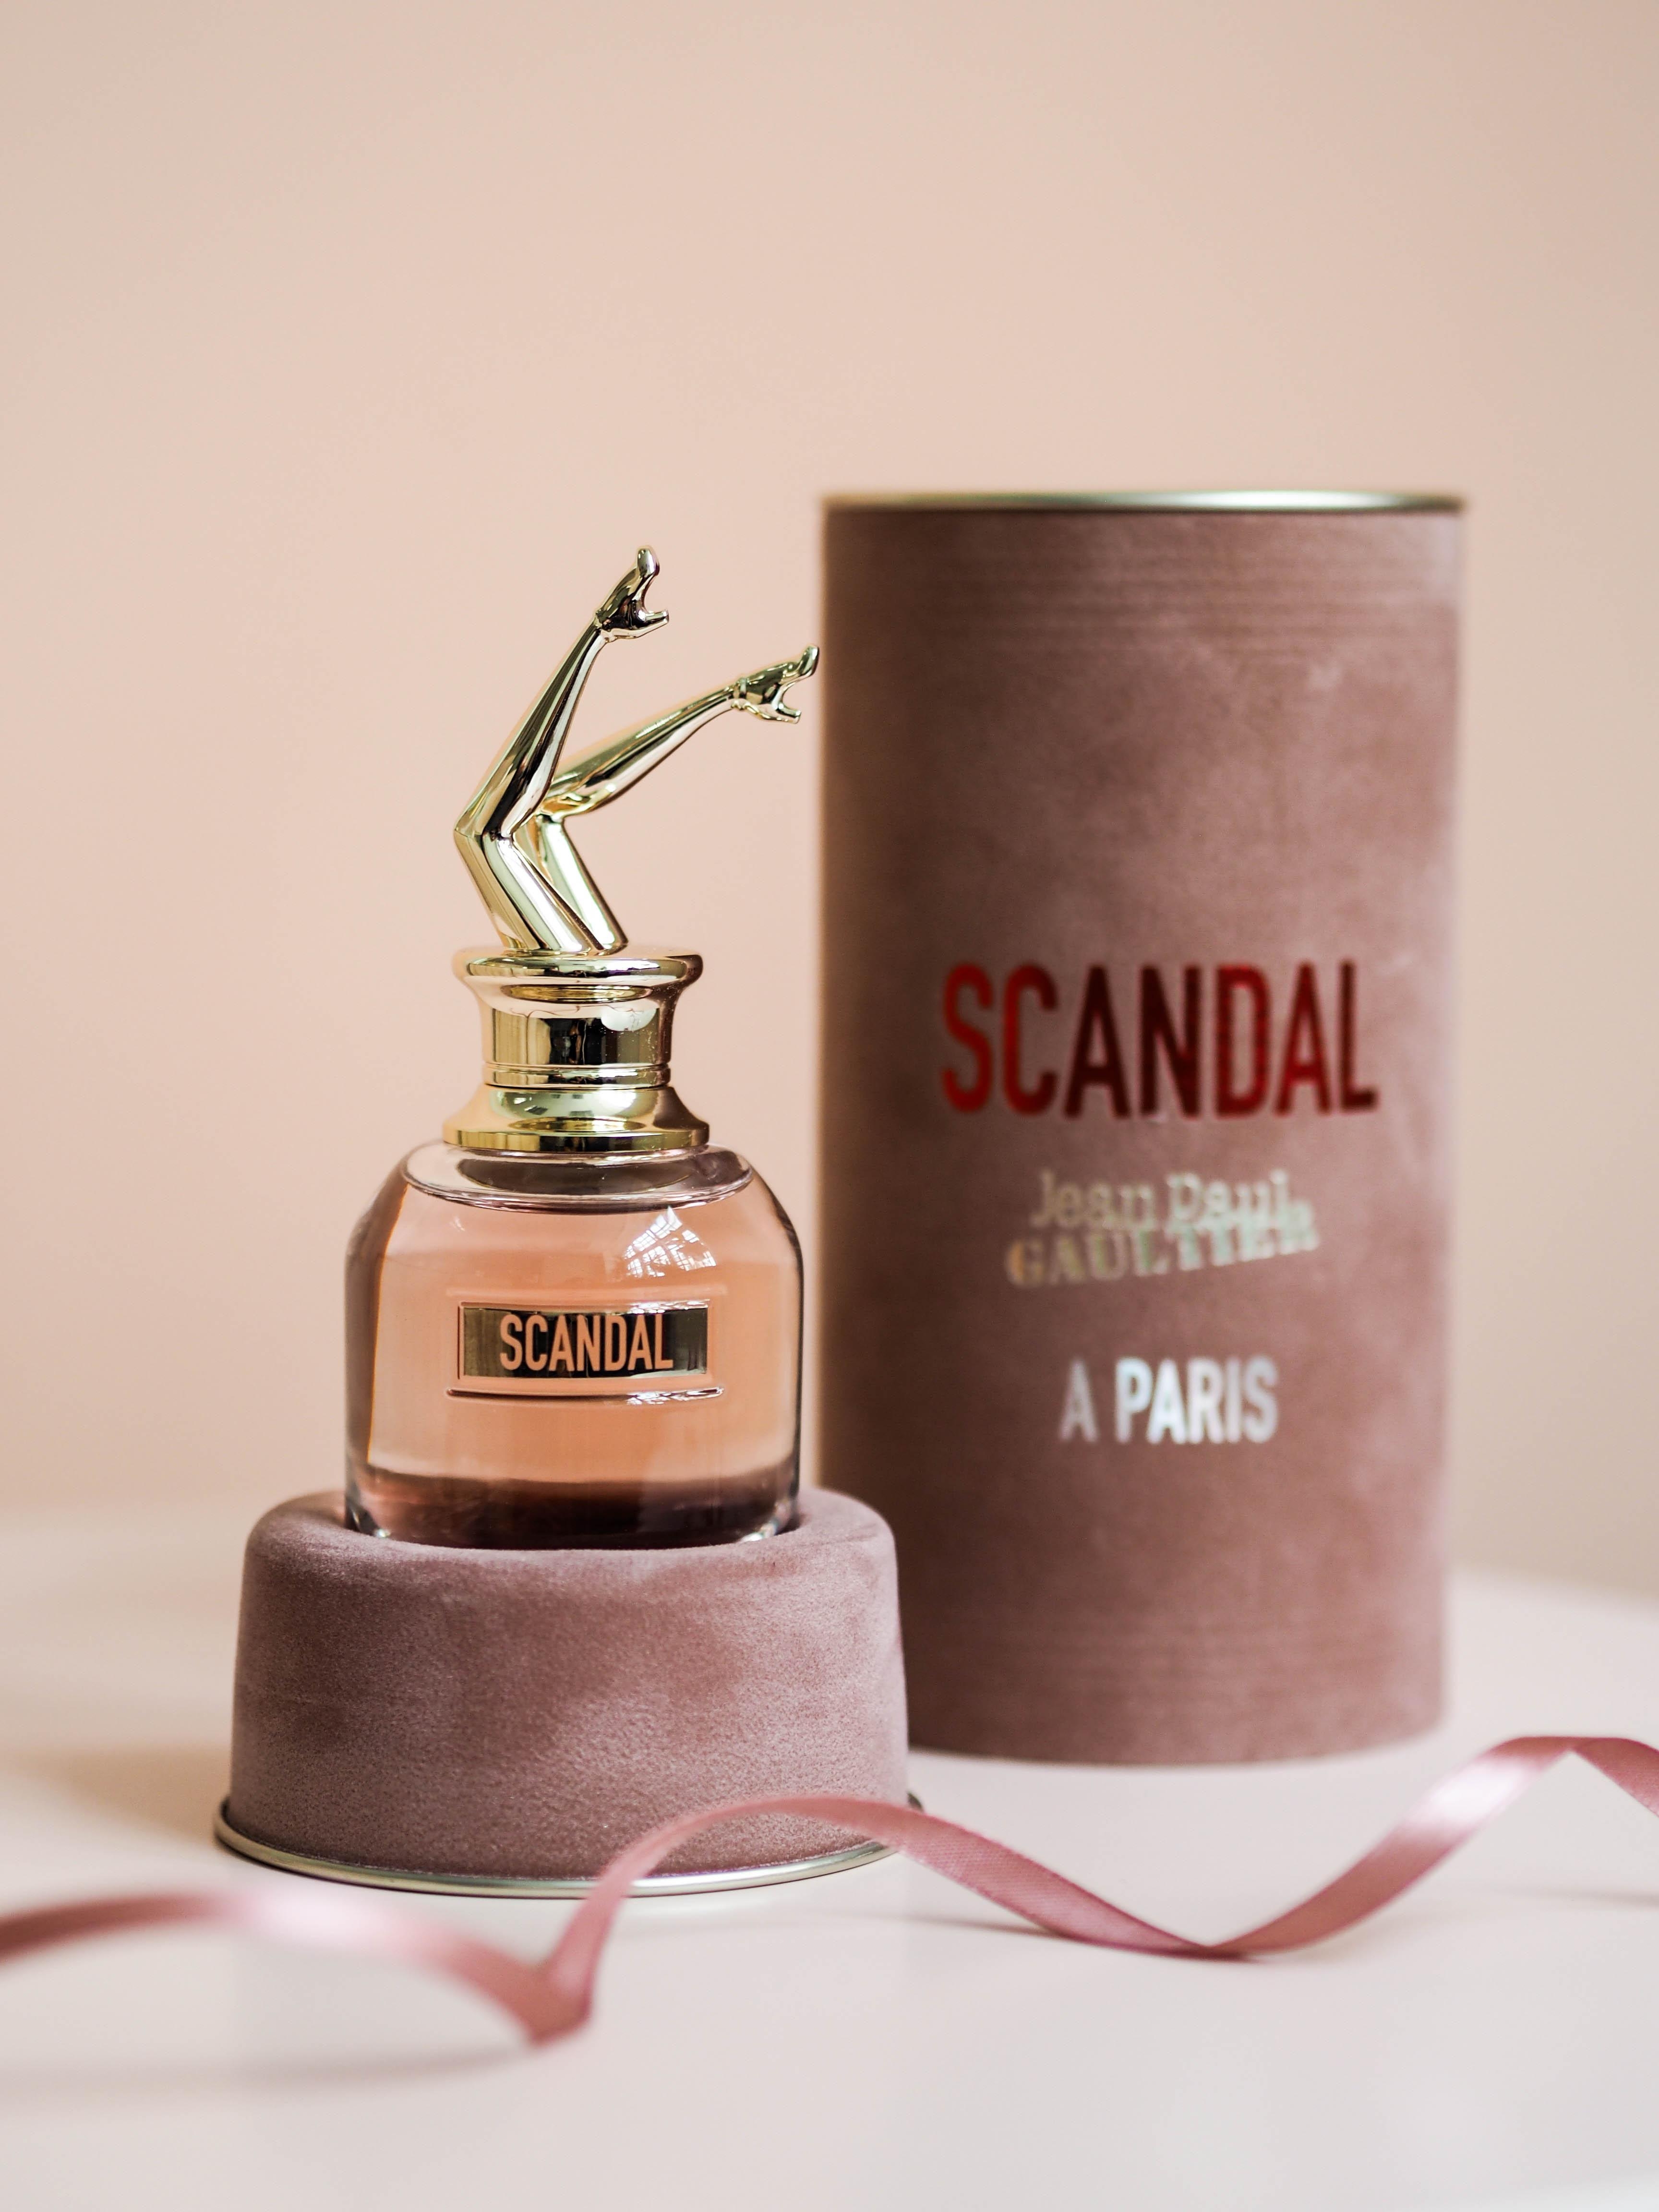 "Scandal" von Jean Paul Gaultier macht mit Zitrus-Honig-Duft sinnlich-süchtig #beautylieblinge #jeanpaulgaultier #parfum